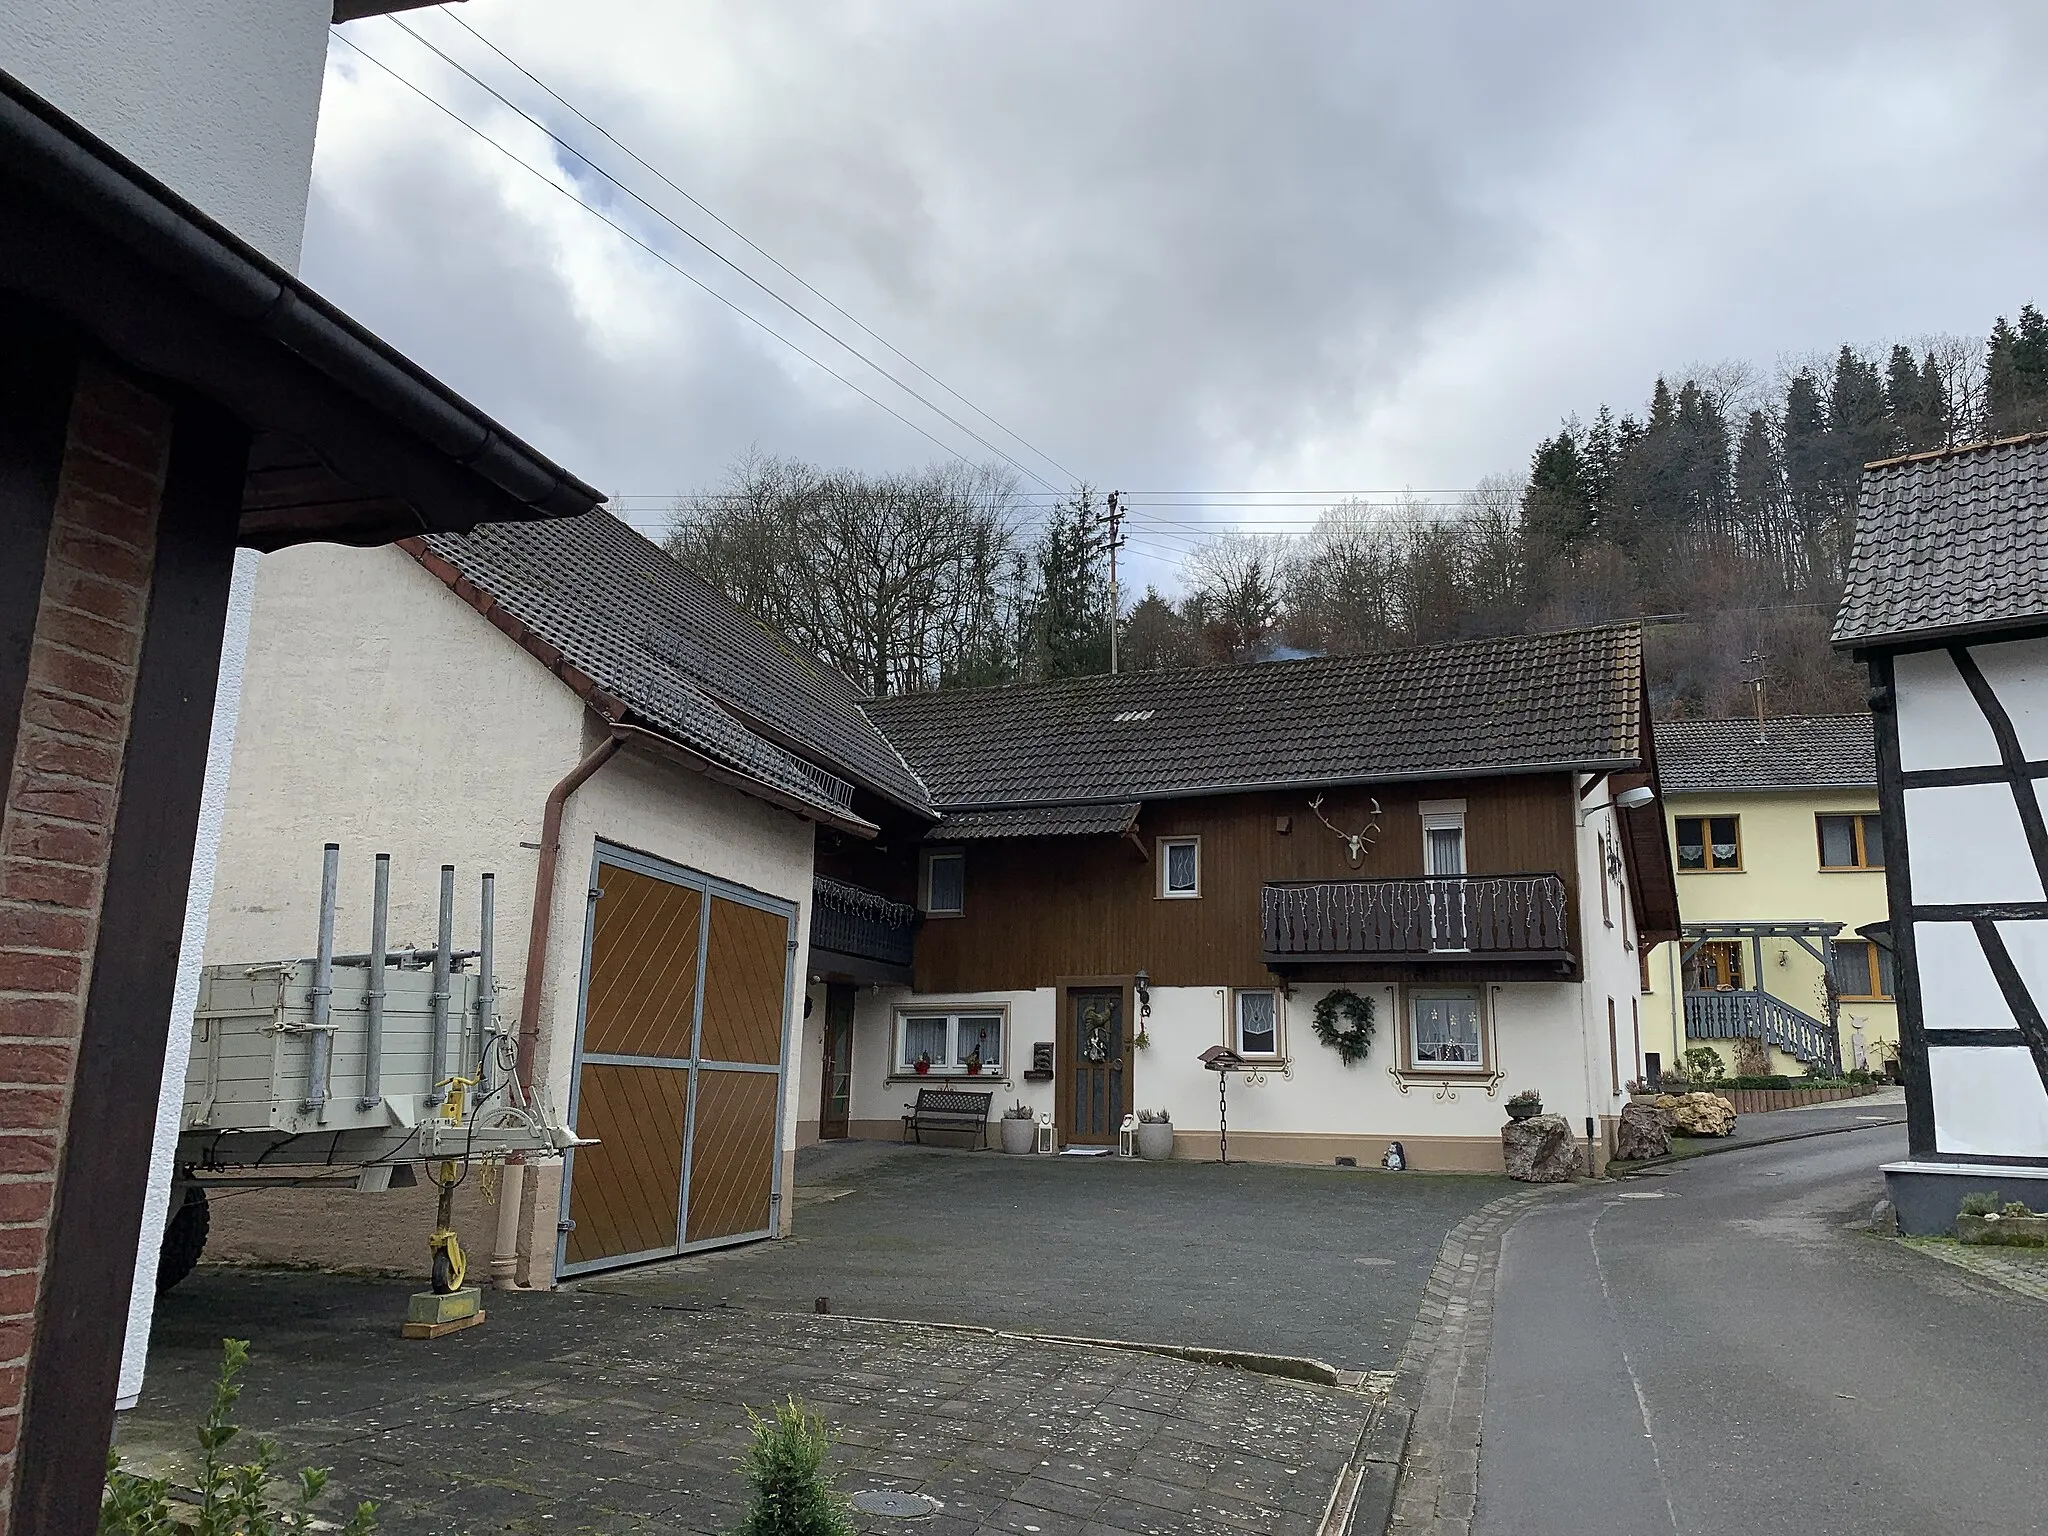 Photo showing: Binzenbach, ein Ortsteil der Gemeinde Kirchsahr im Landkreis Ahrweiler in Rheinland-Pfalz